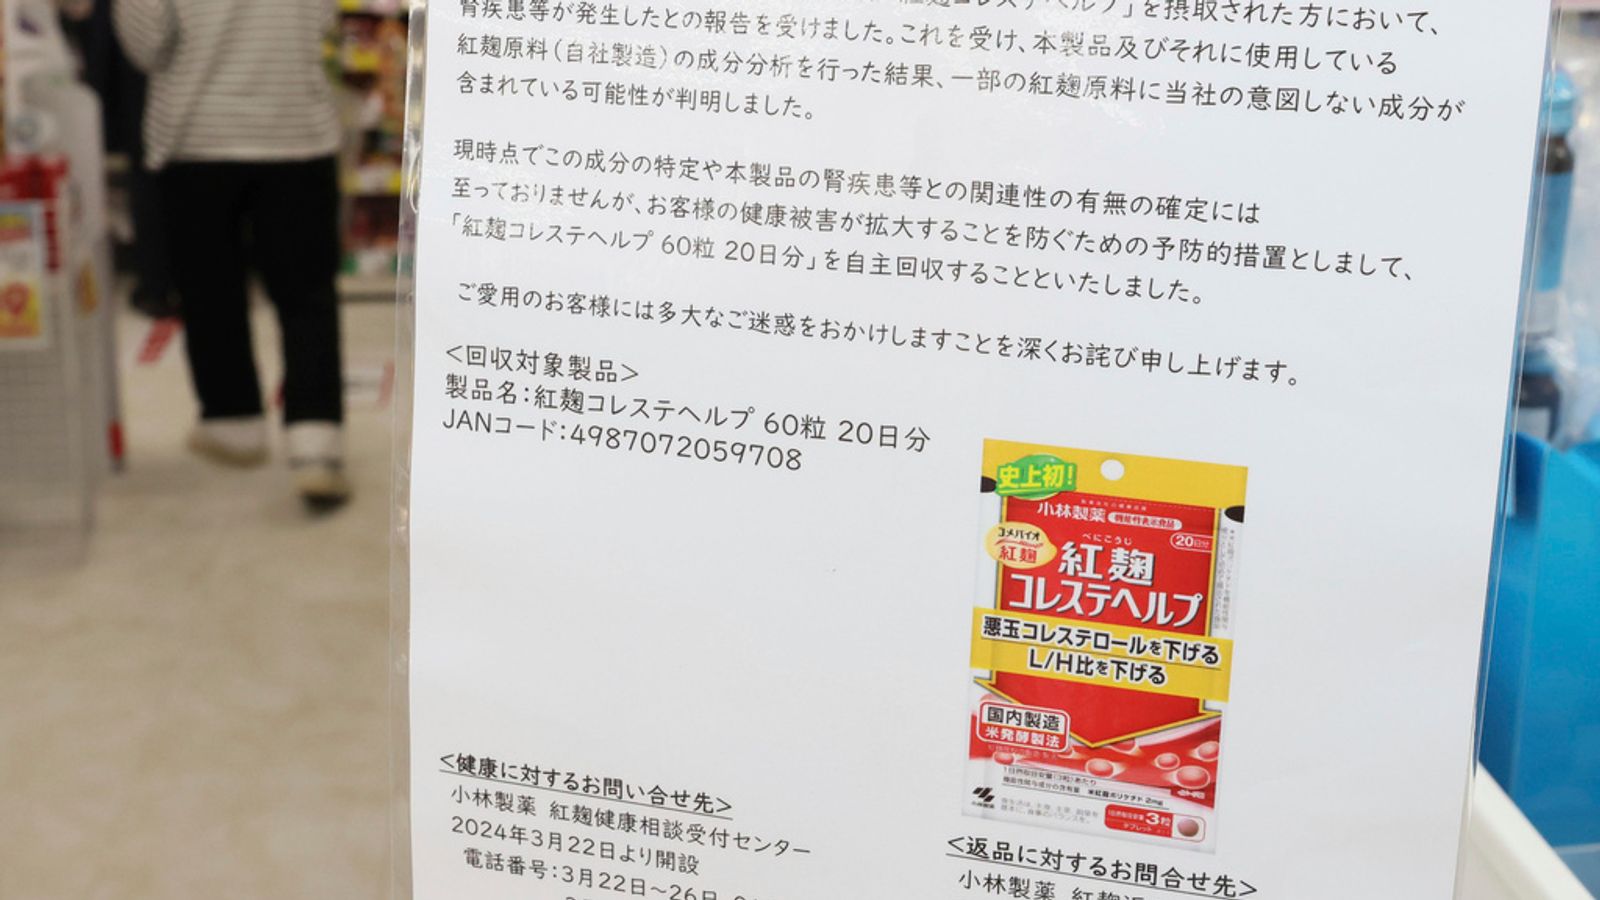 Петима мъртви и повече от 100 в болница след прием на хранителни добавки в Япония